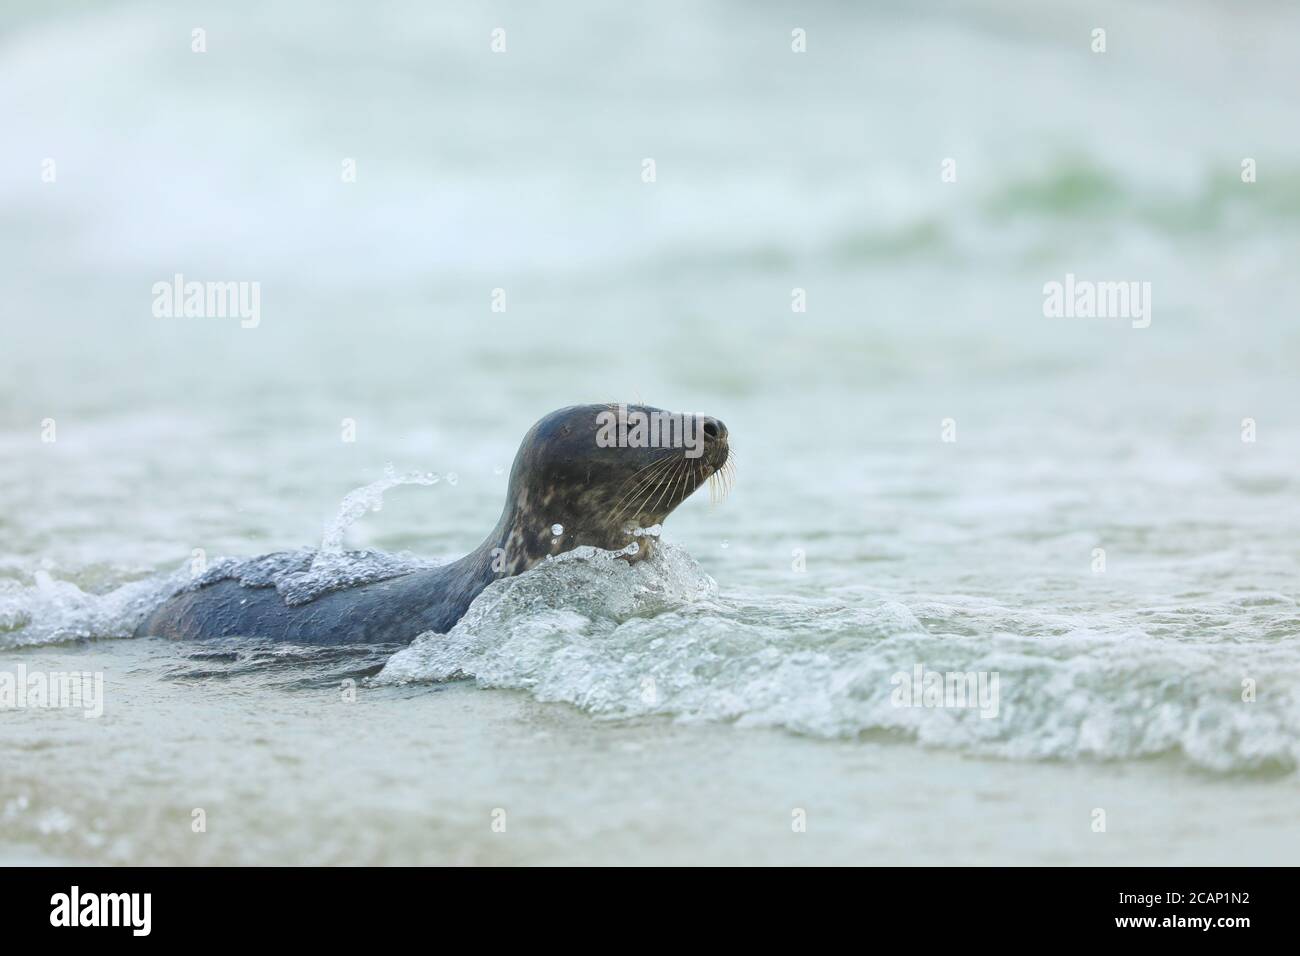 Phoque gris, Halichoerus grypus, portrait dans l'eau, nage d'animaux dans les vagues de l'océan, Allemagne Banque D'Images